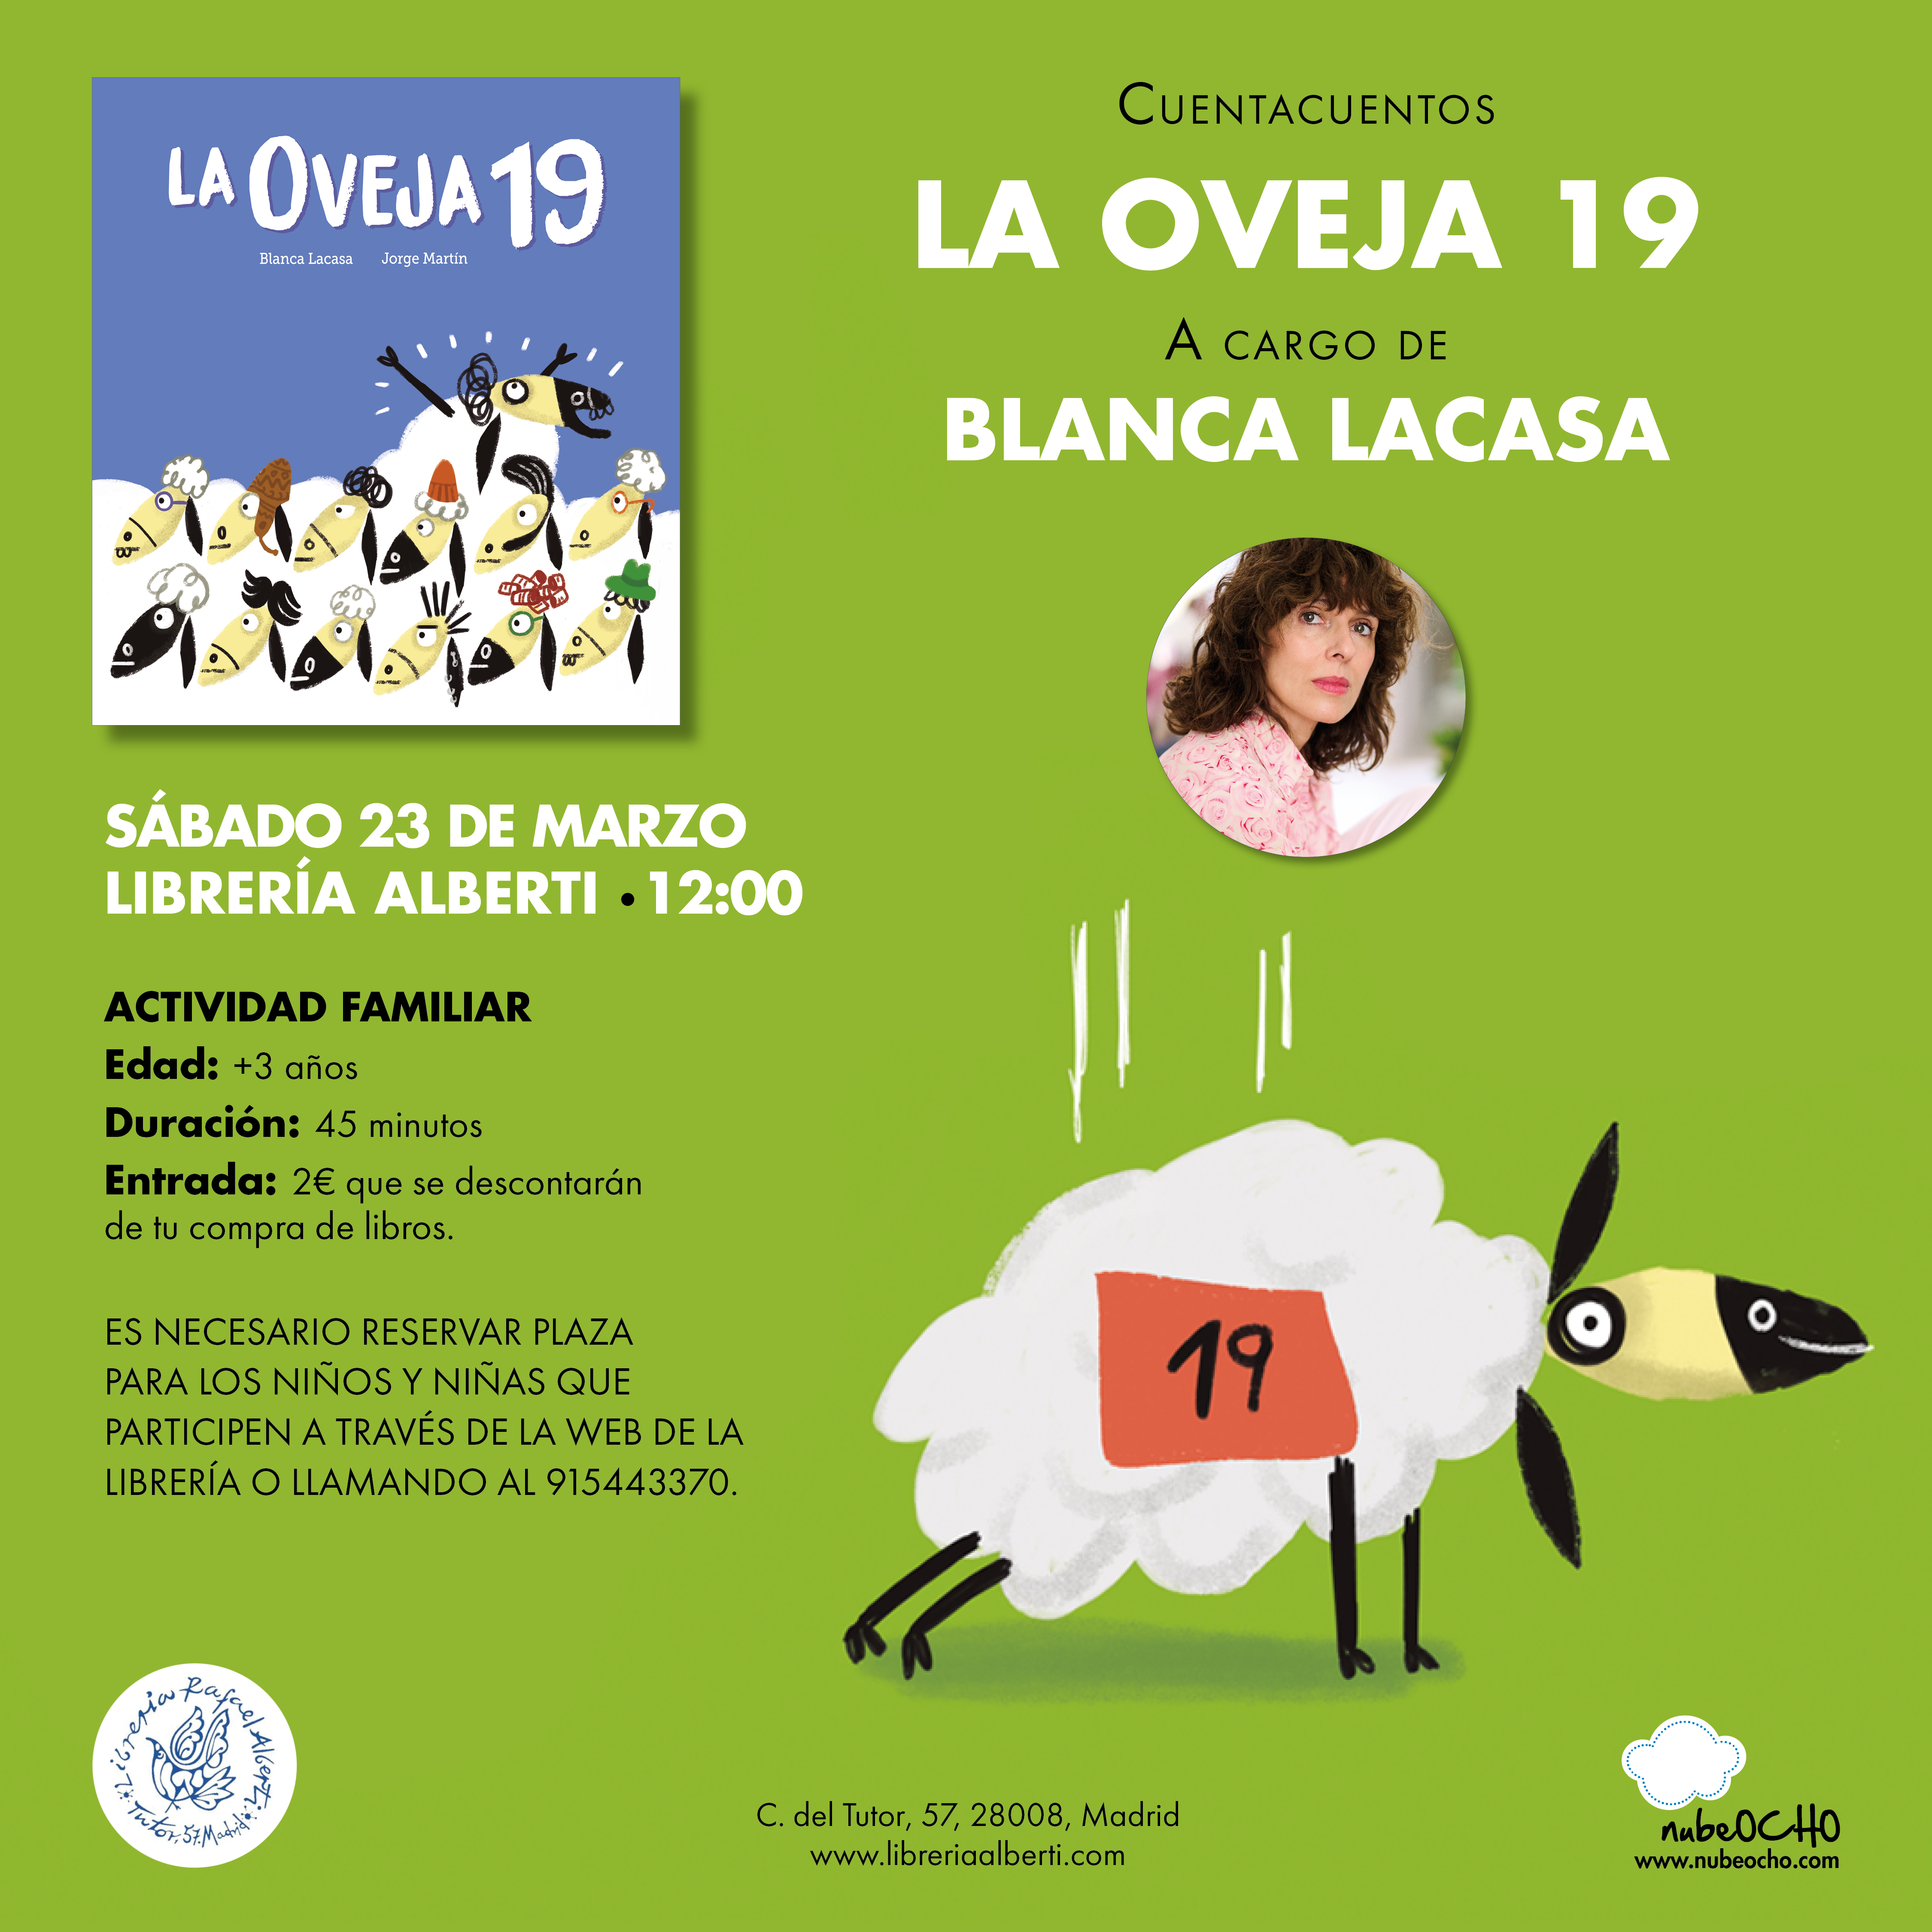 La oveja 19 | Cuentacuentos con BLANCA LACASA